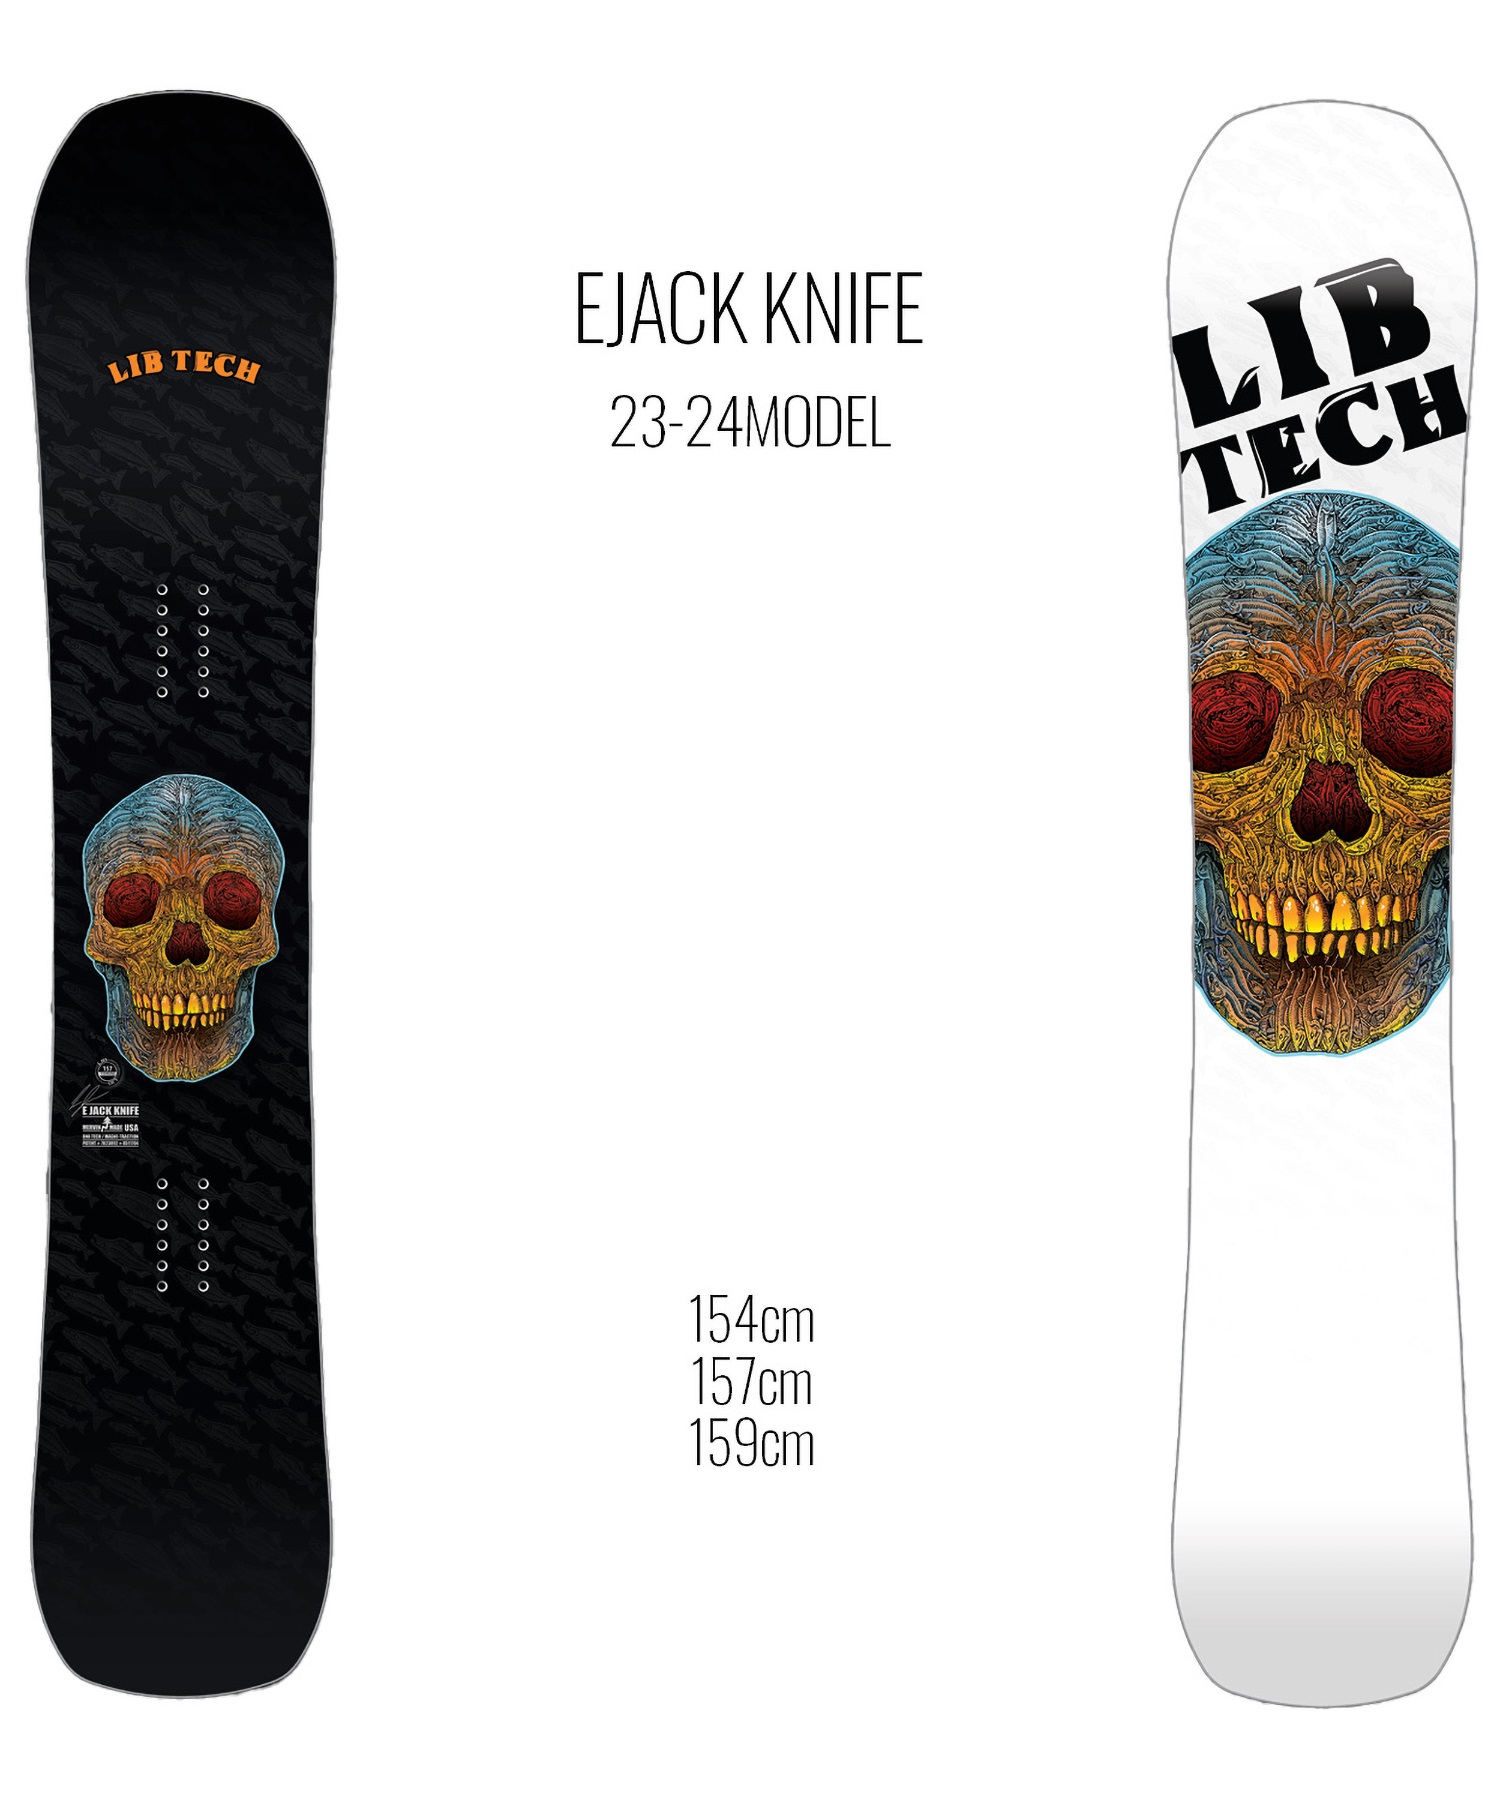 スノーボード 板 メンズ LIBTECH リブテック EJACK KNIFE 23-24モデル ムラサキスポーツ KK B24(BLACK-154cm)